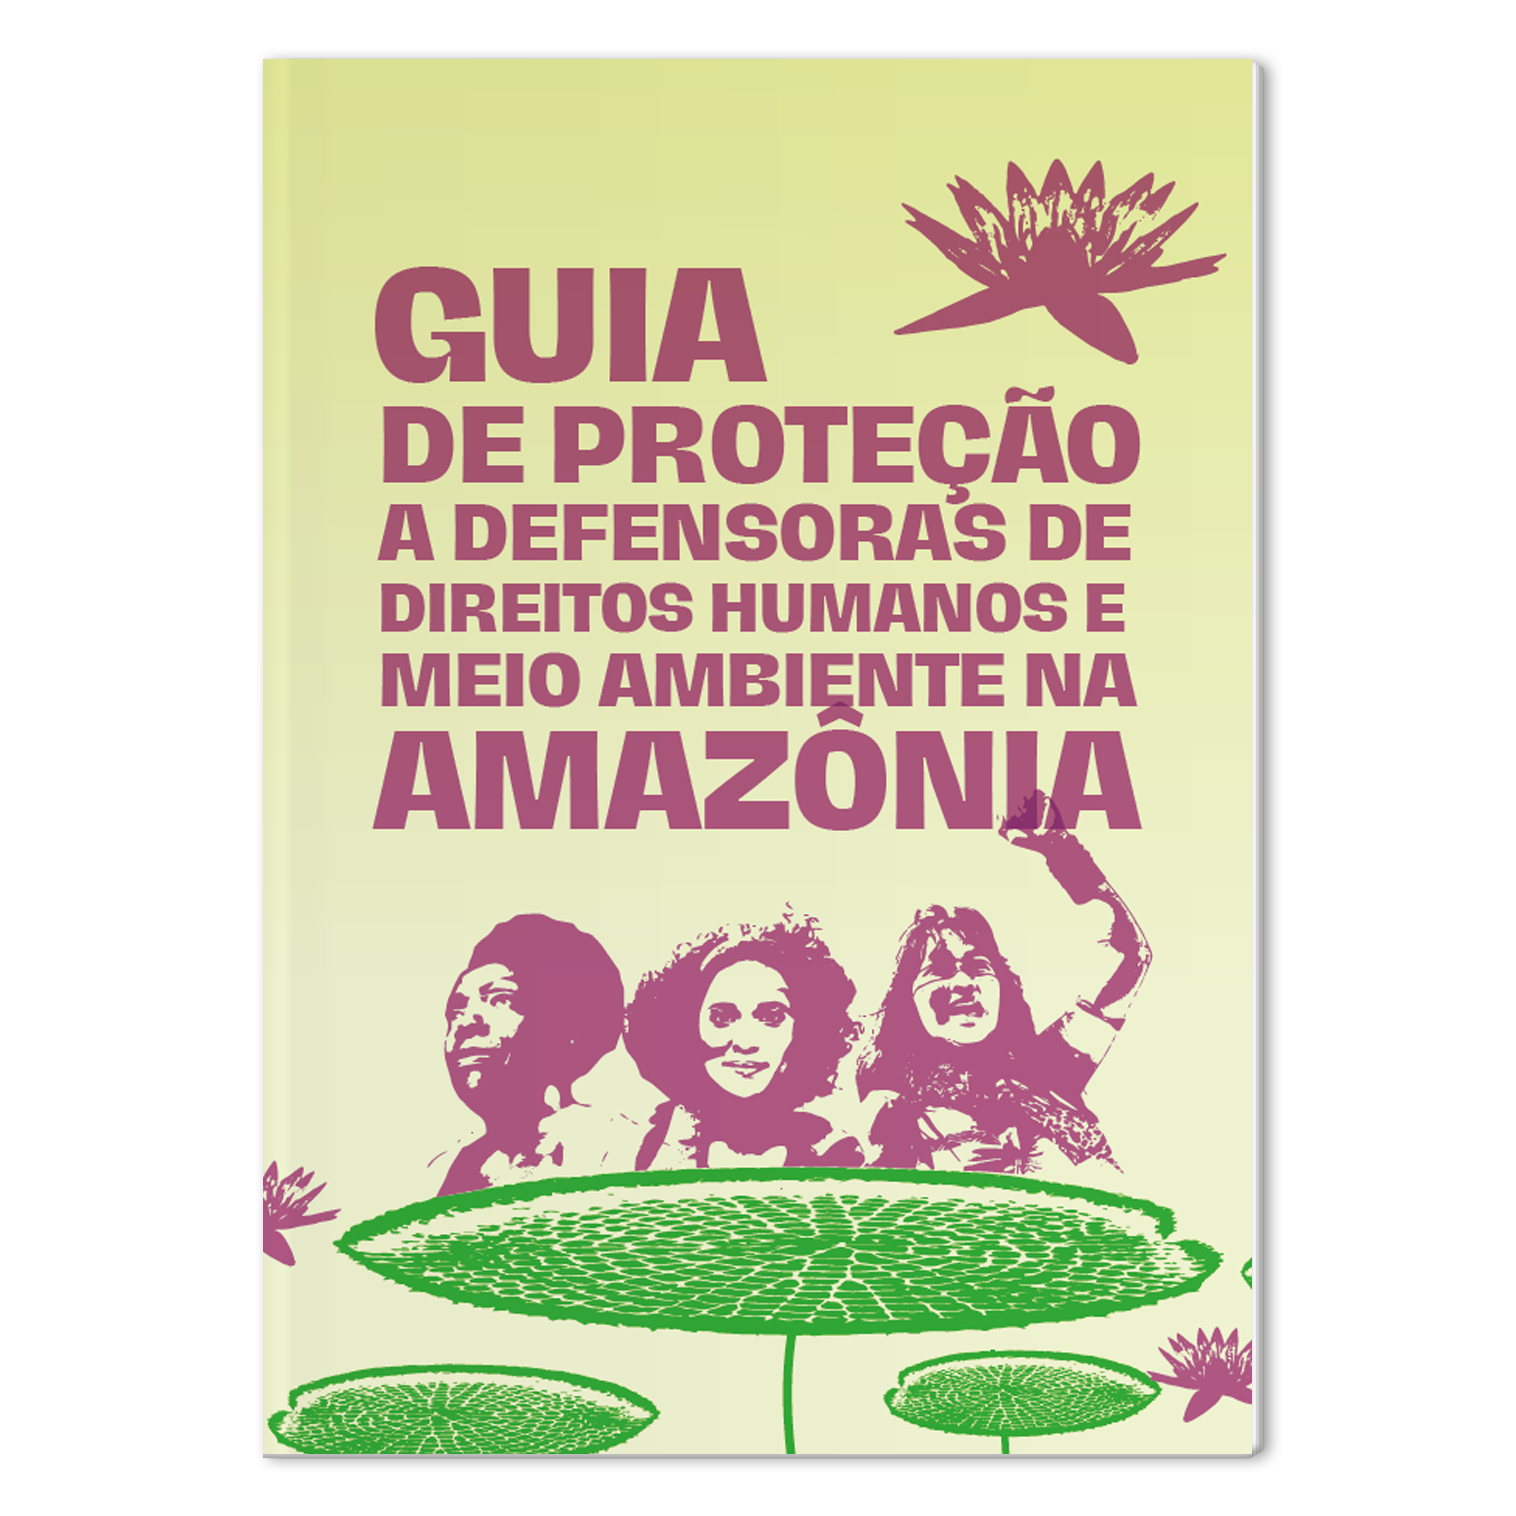 Guia de proteção defensoras Amazonia